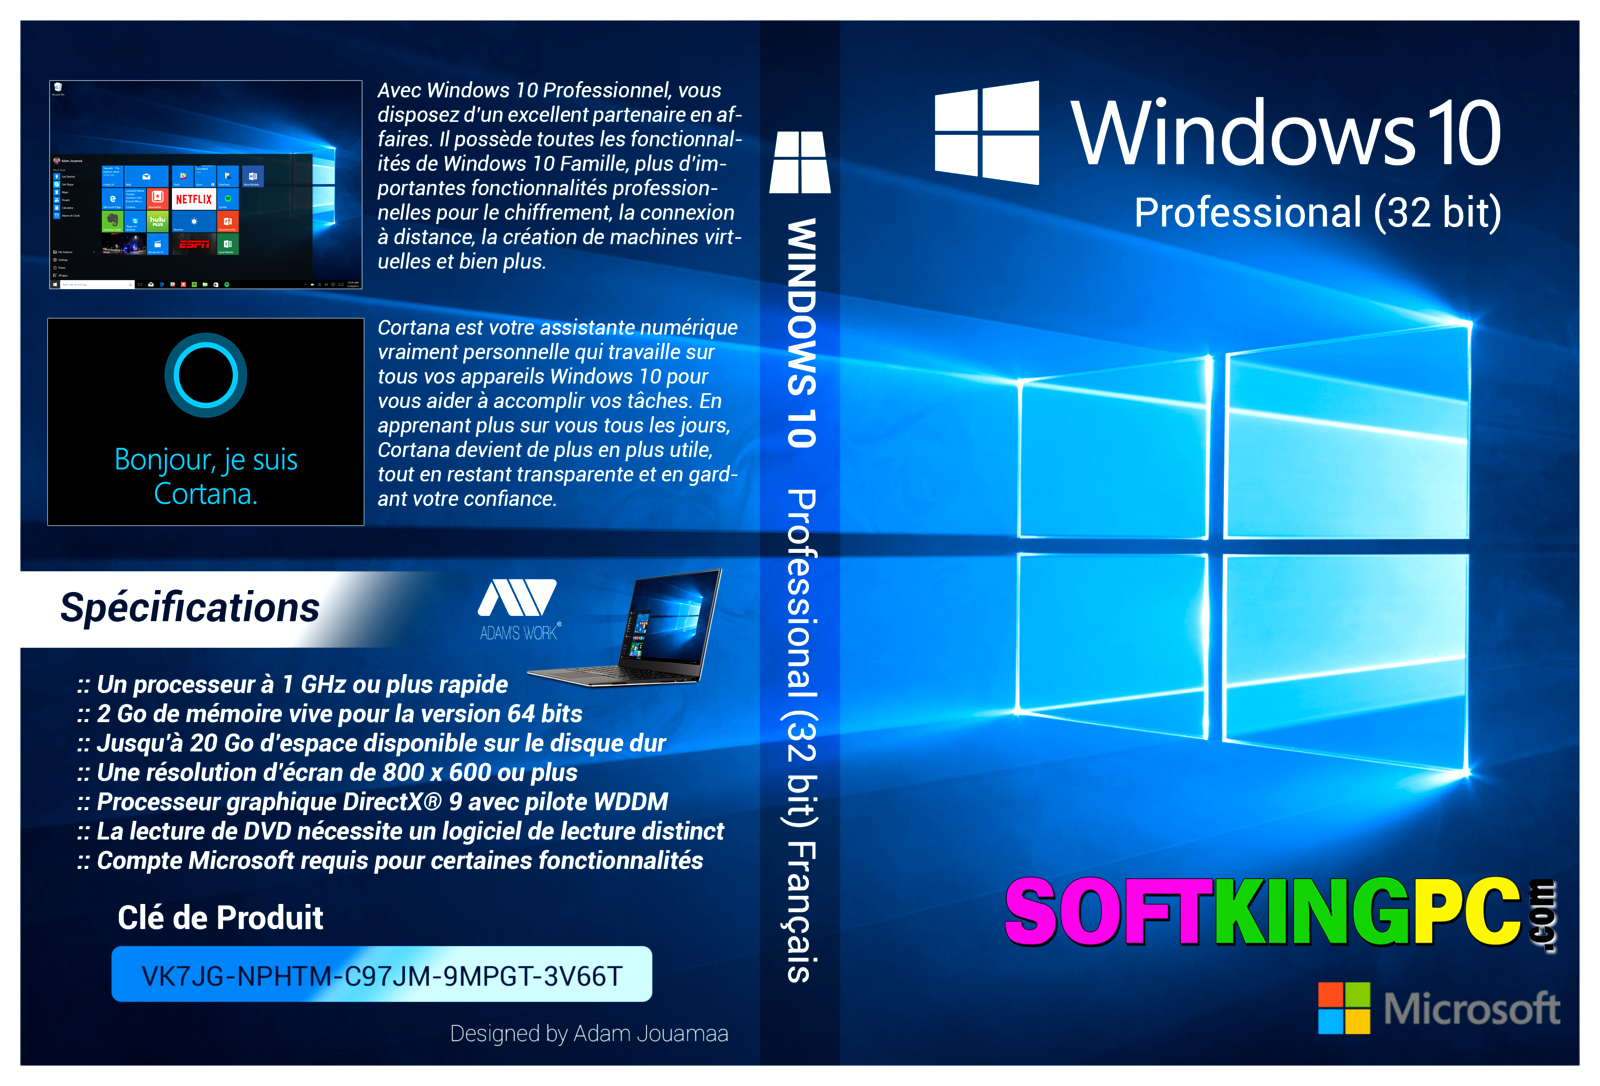 download windows 10 pro 32 bit offline installer